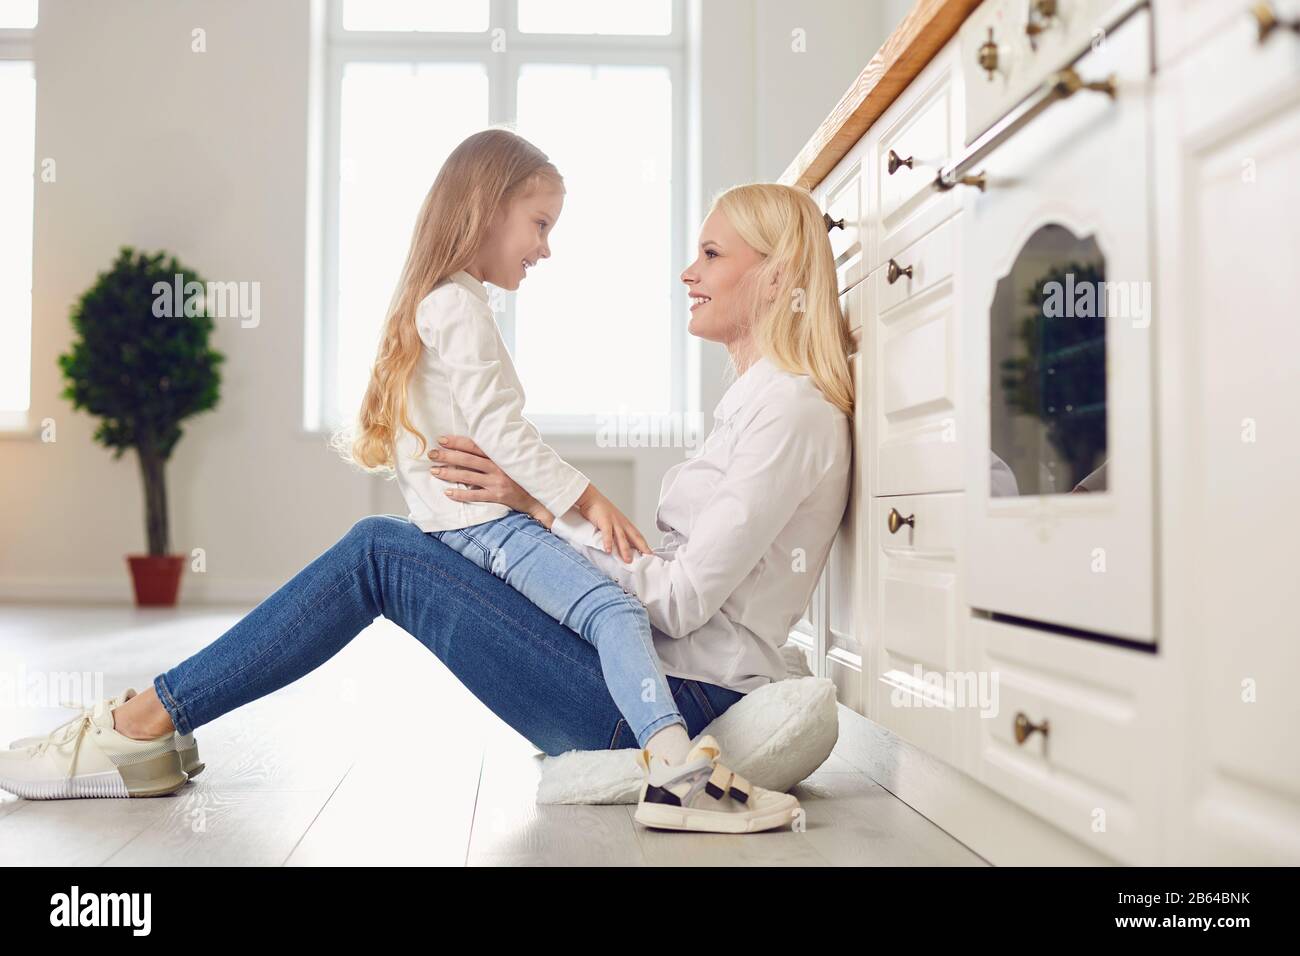 Buon giorno della madre. Madre e figlia che abbracciano sorridendo in cucina. Foto Stock